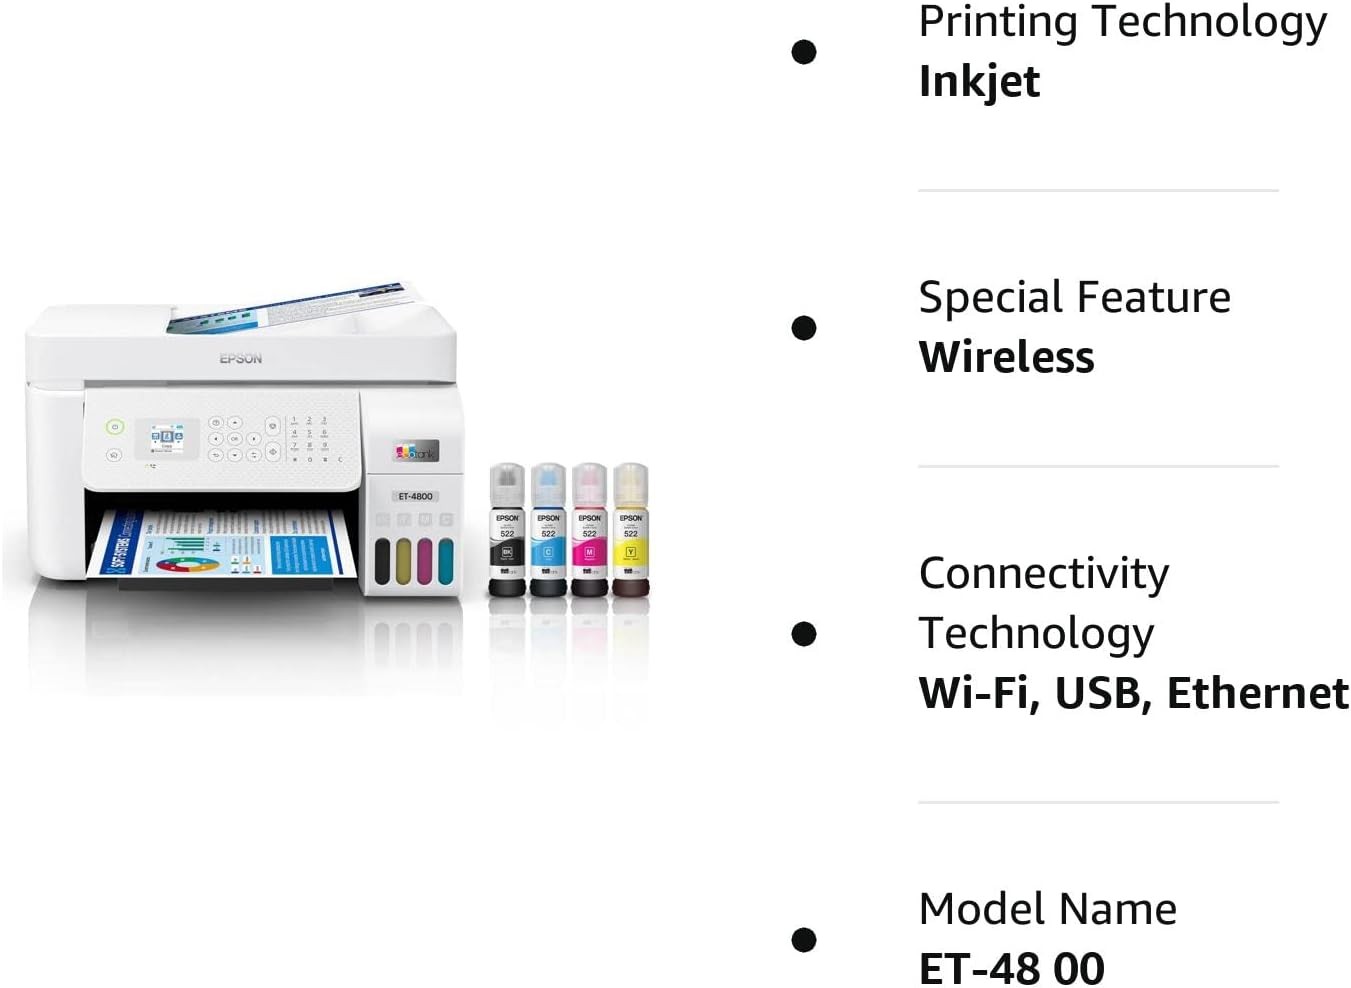 impresoras y scanners - Epson EcoTank ET-4800 Impresora Multifuncional, ADF y Fax, WIFI, USB, Enthernet 6